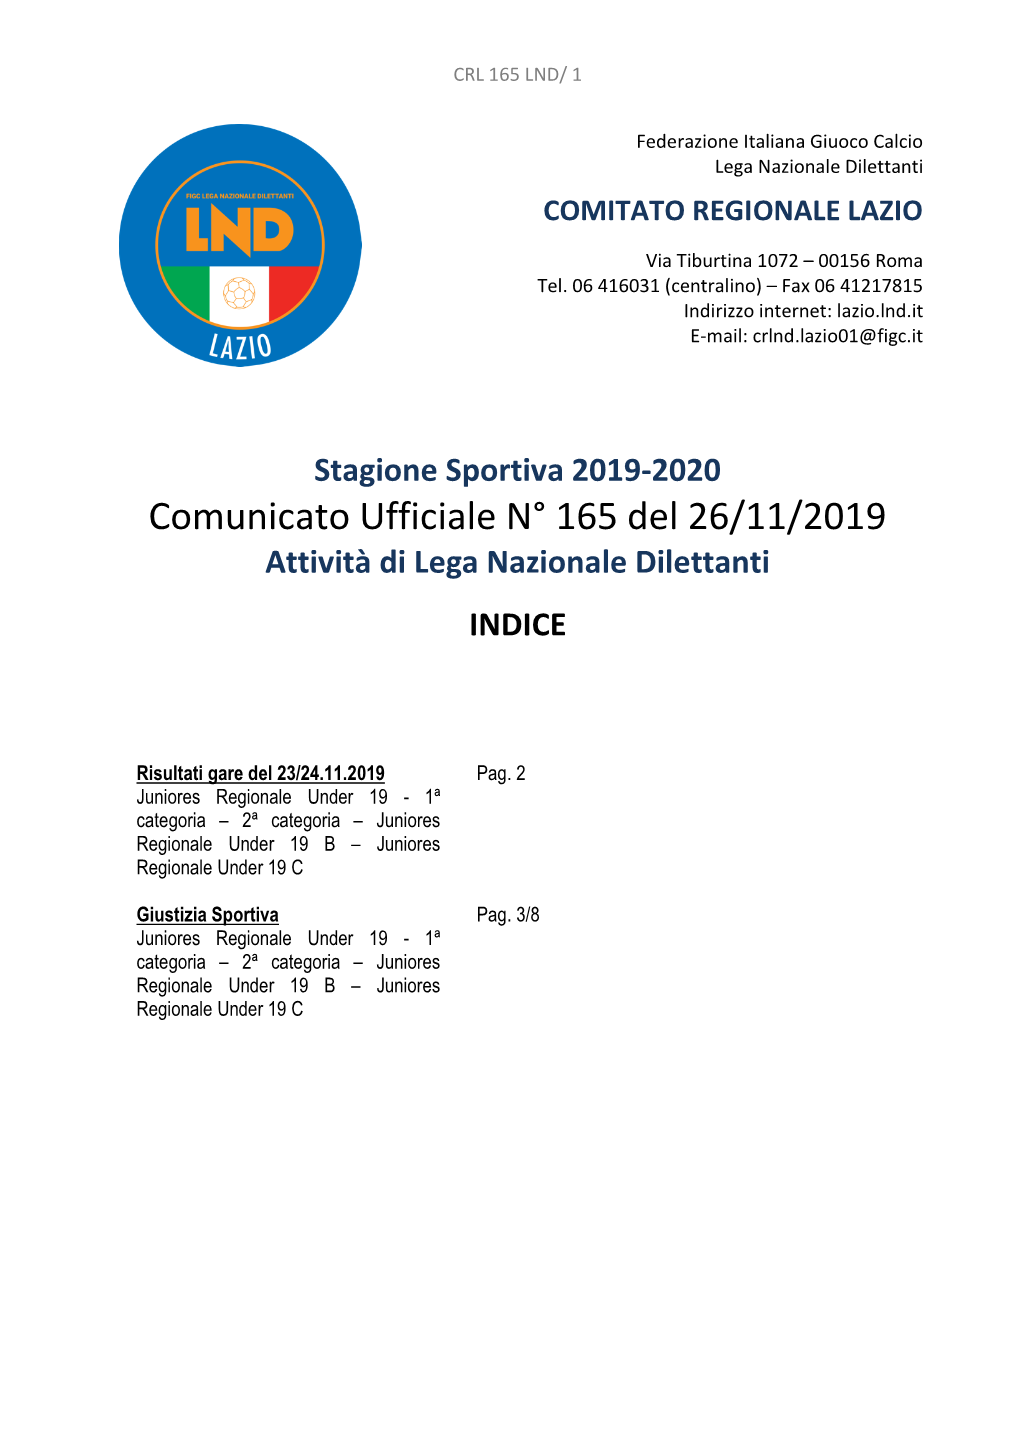 Comunicato Ufficiale N° 165 Del 26/11/2019 Attività Di Lega Nazionale Dilettanti INDICE